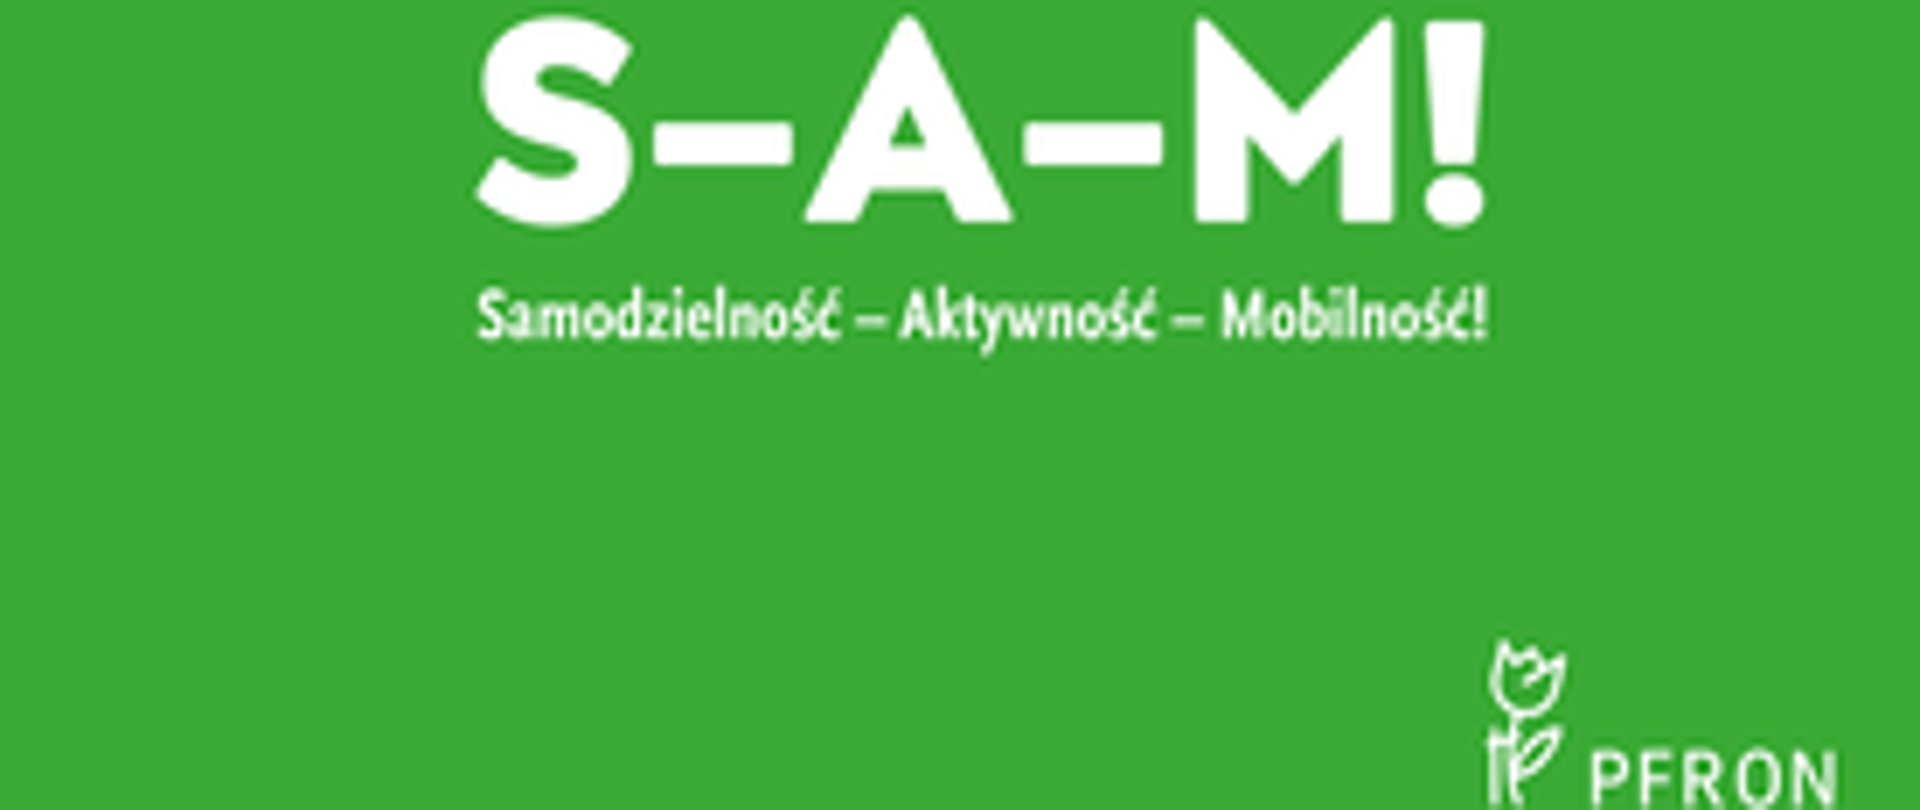 Na zielonym tle napis S-A-M! Samodzielność-Aktywność-Mobilność!, w prawym dolnym rogu biały kontur tulipana jako logo PFRON